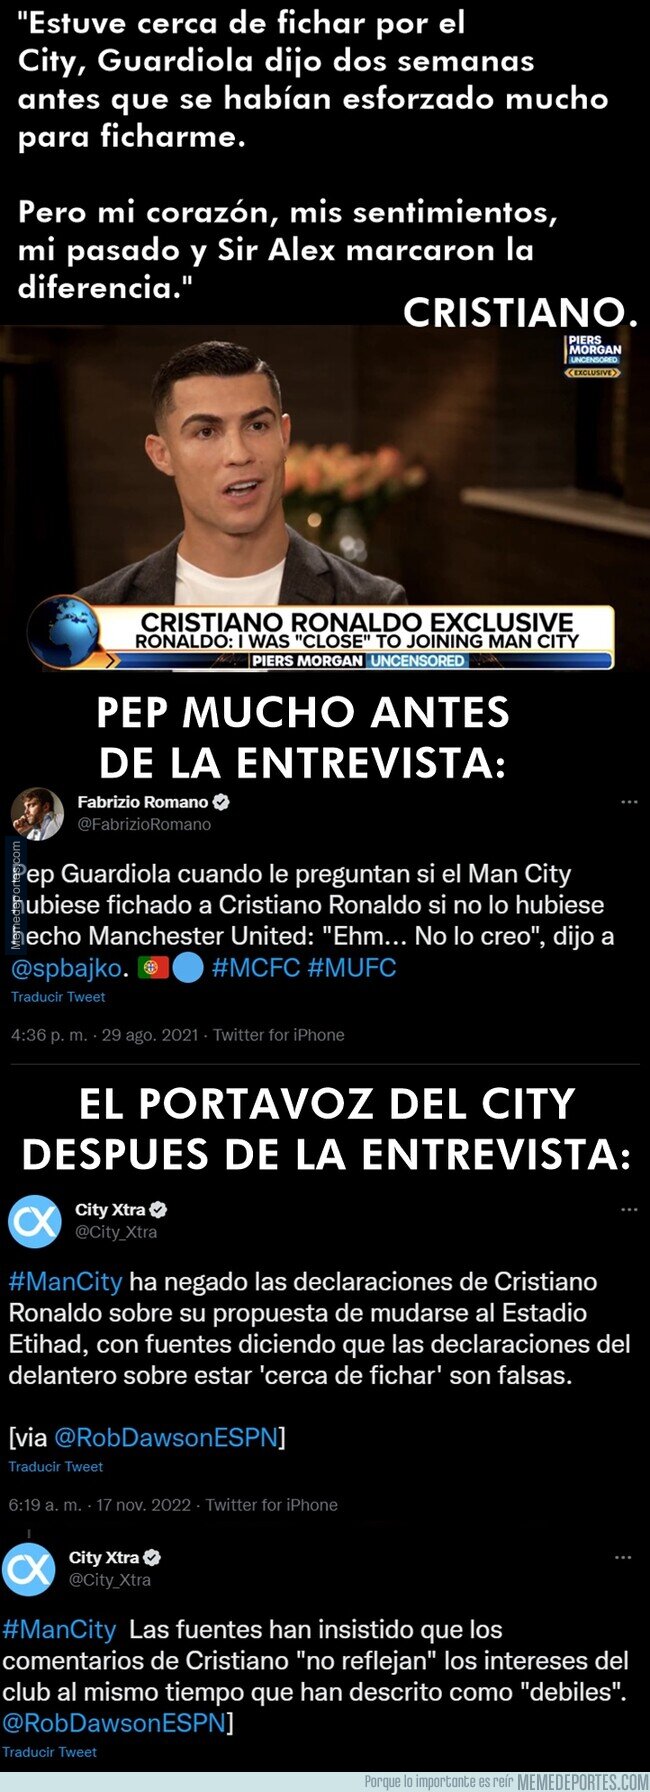 1174452 - Retratado. Cristiano pillado en otra mentira en su entrevista hablando sobre el Manchester City